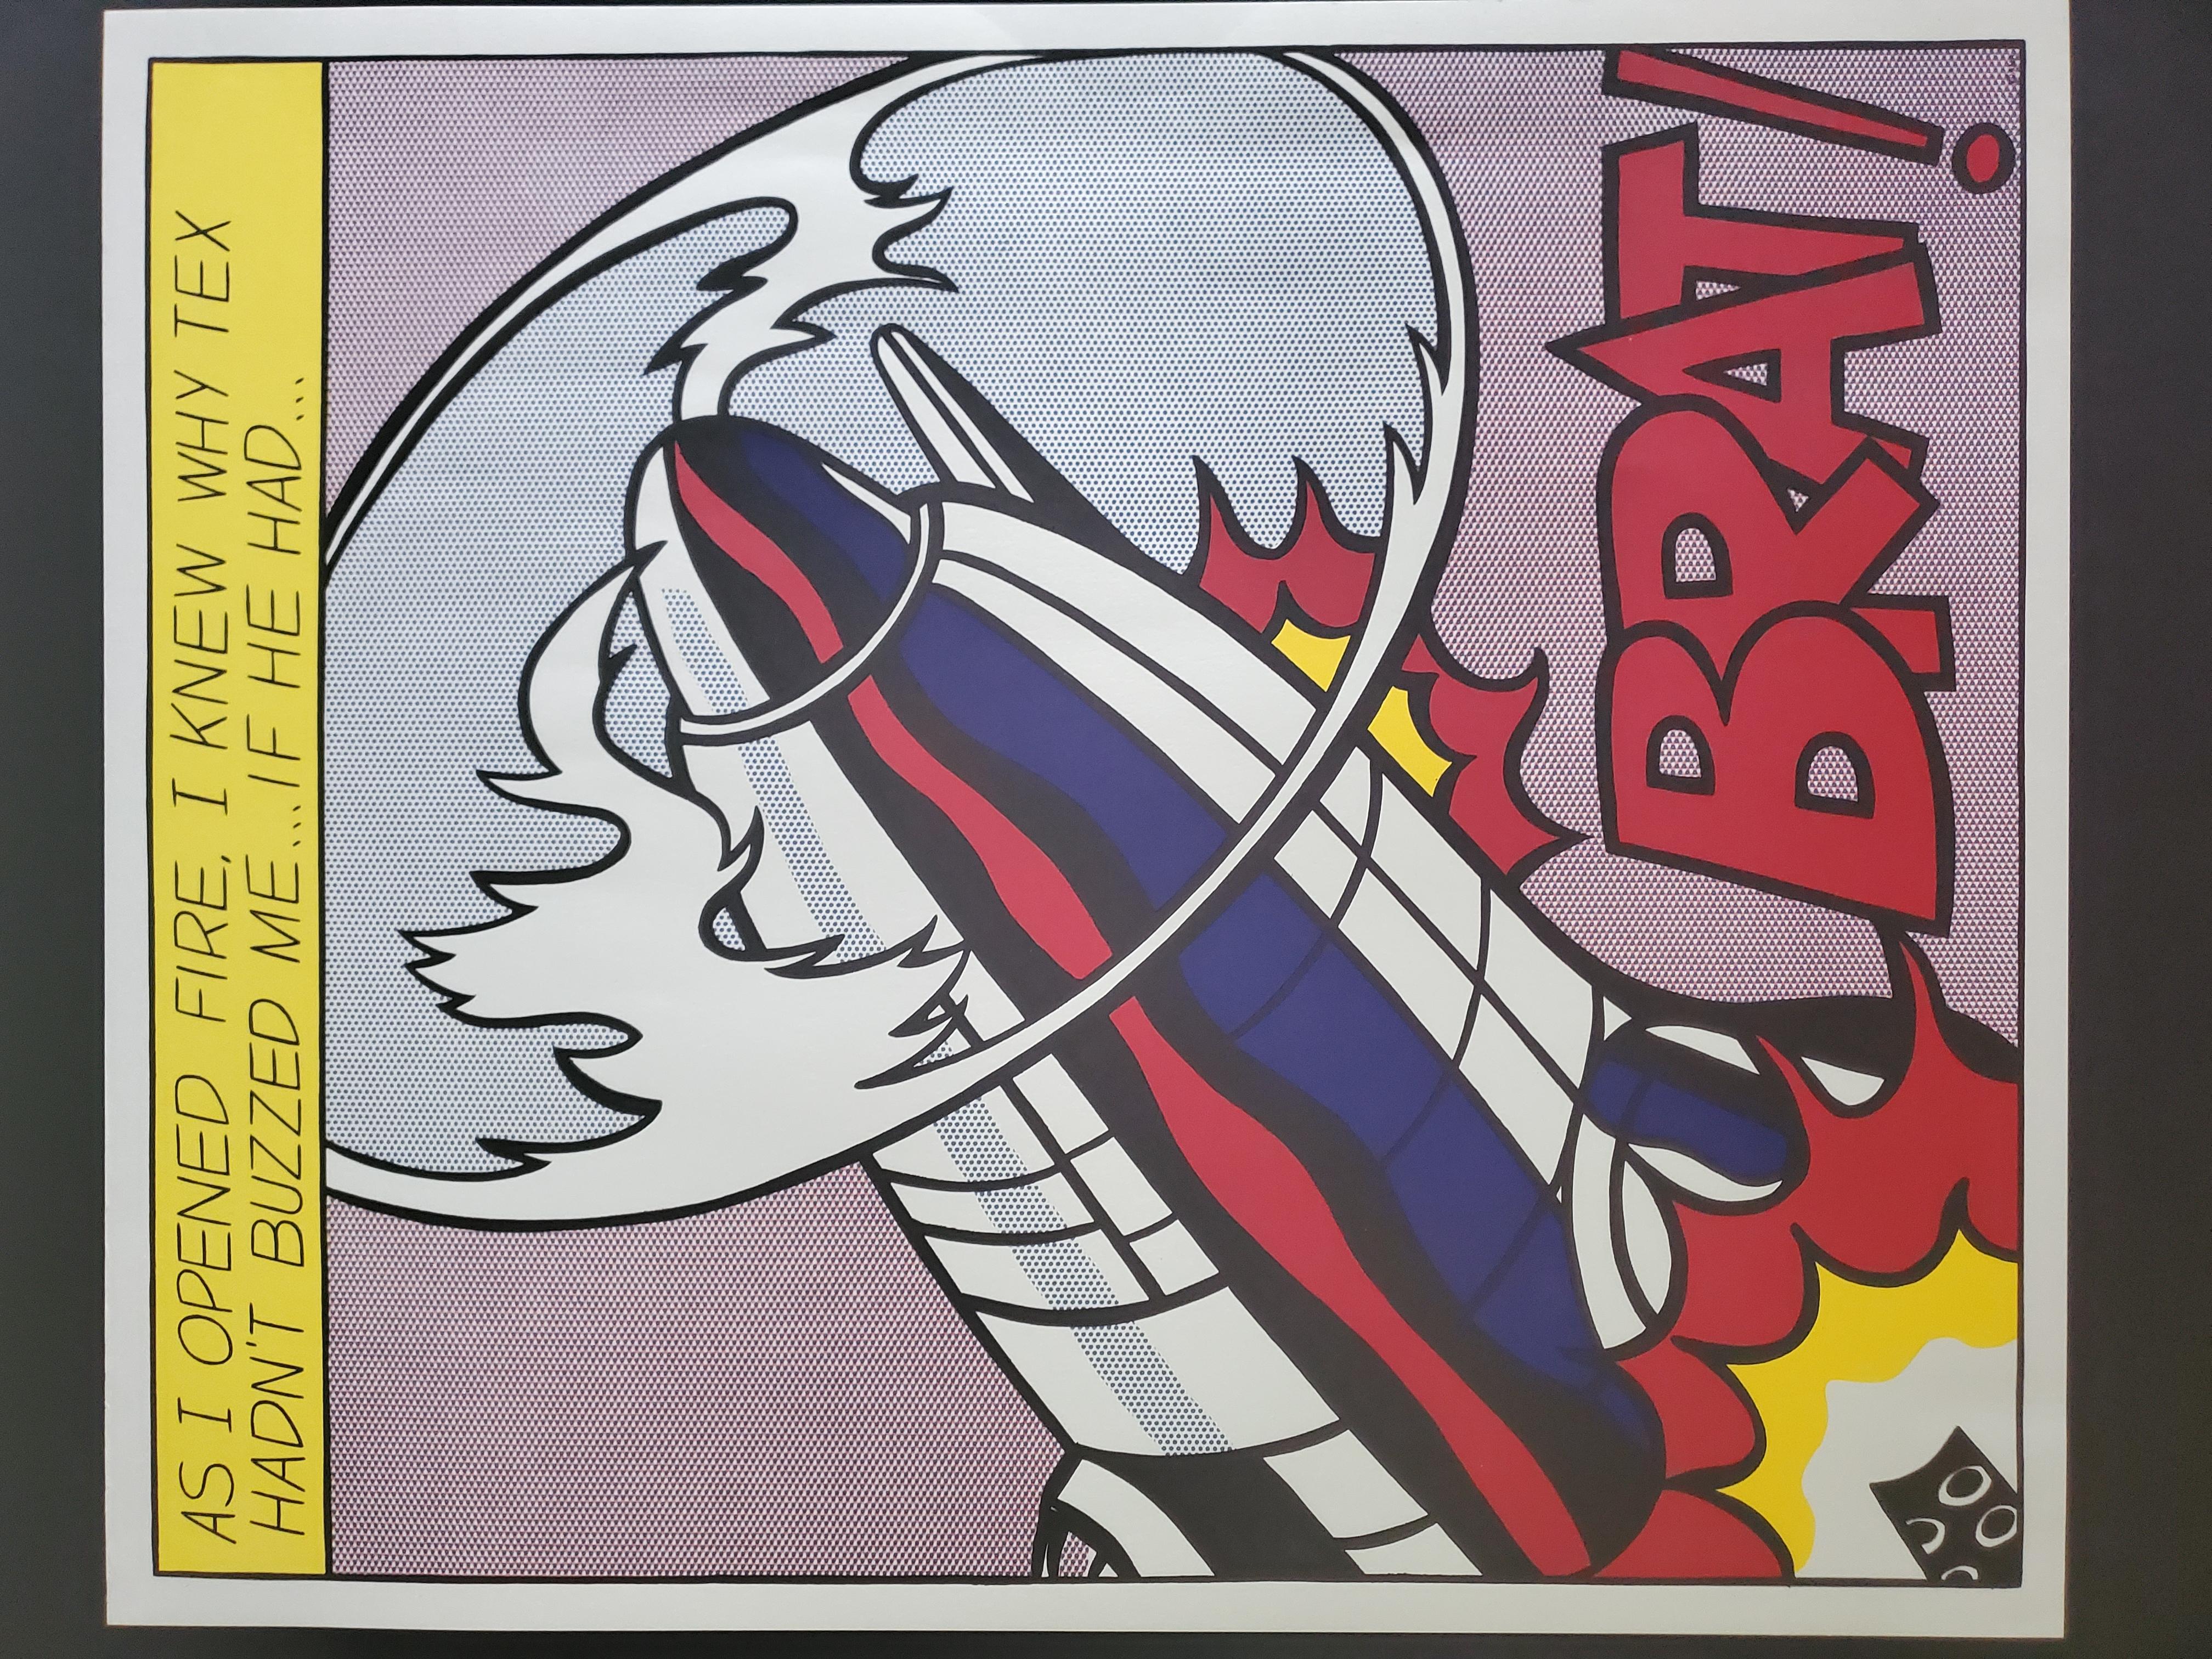 Artistics : Roy Lichtenstein (américain, 1923-1997)
Titre : 